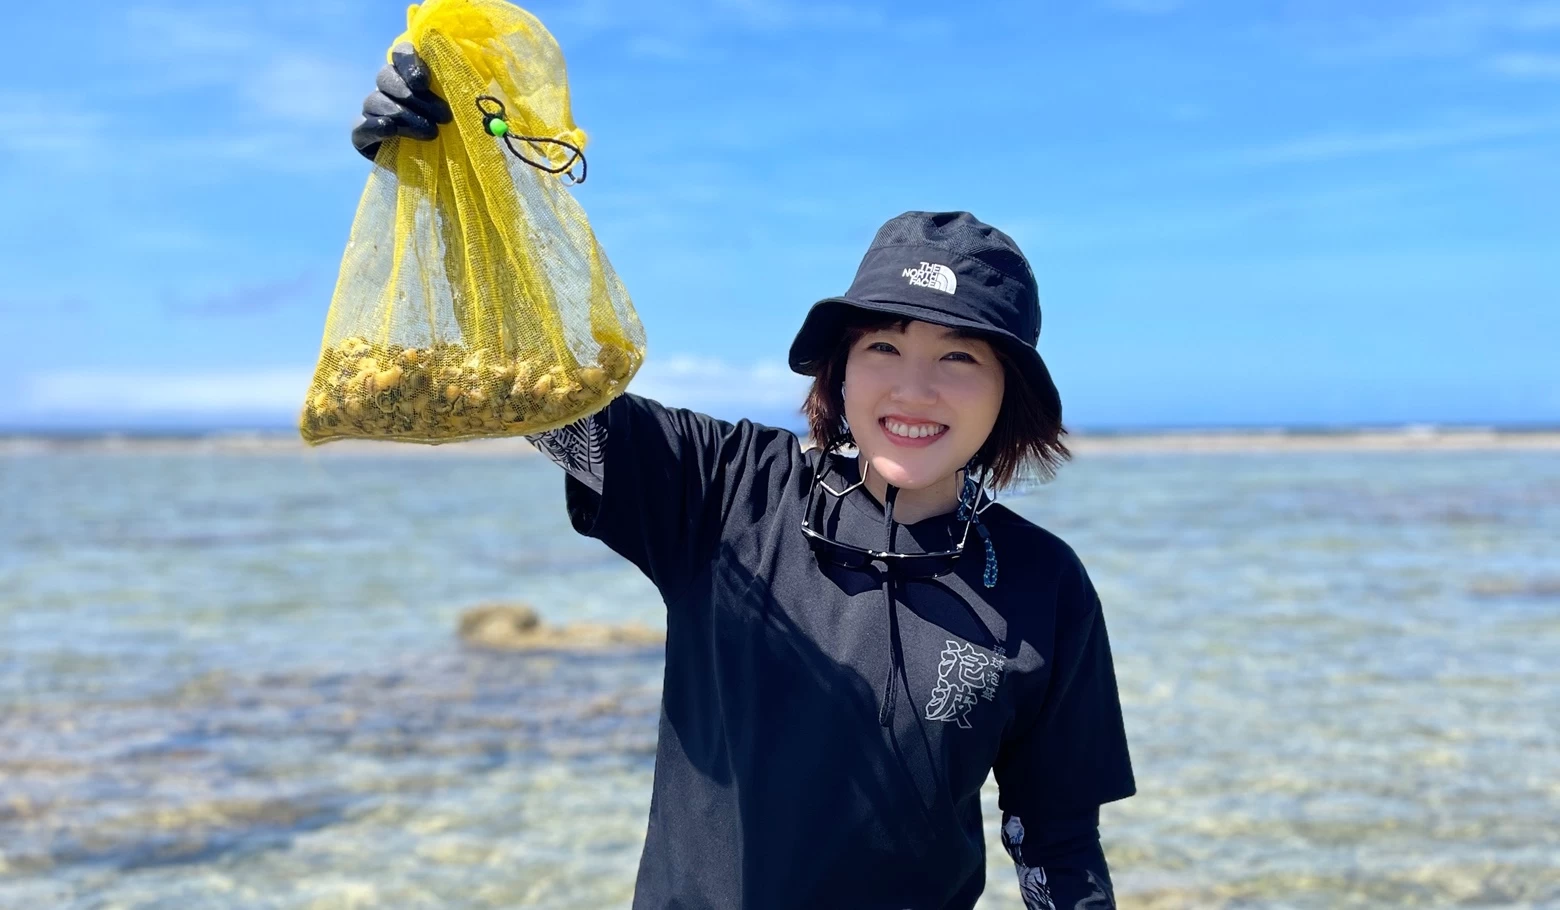 日本最南端の波照間島でマーリャン獲り。貝と味わう極上ビール体験